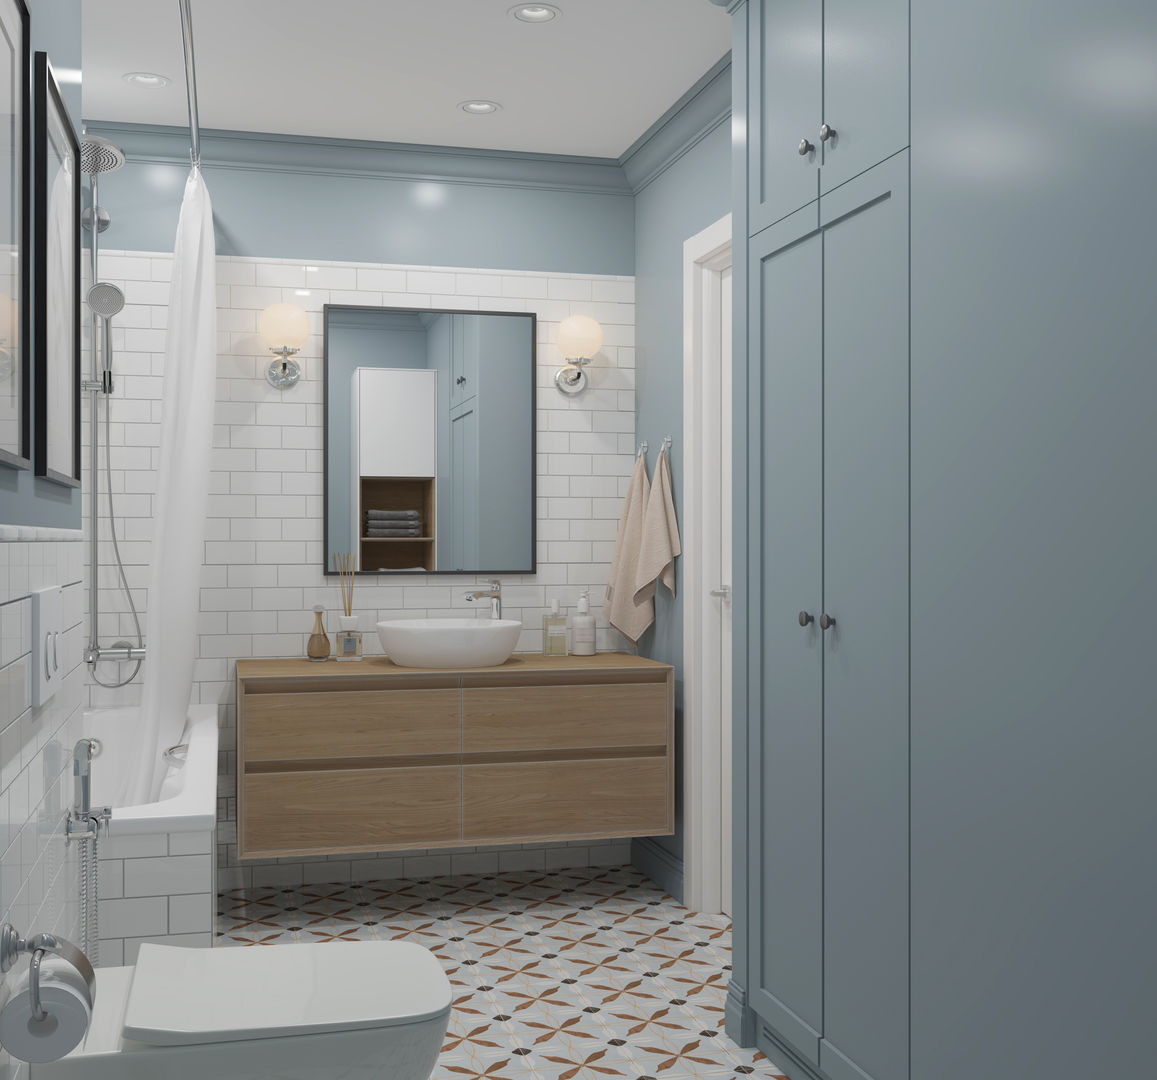 ЖК "Татьянин Парк", двухкомнатная квартира для молодой семьи, OM DESIGN OM DESIGN Scandinavian style bathroom